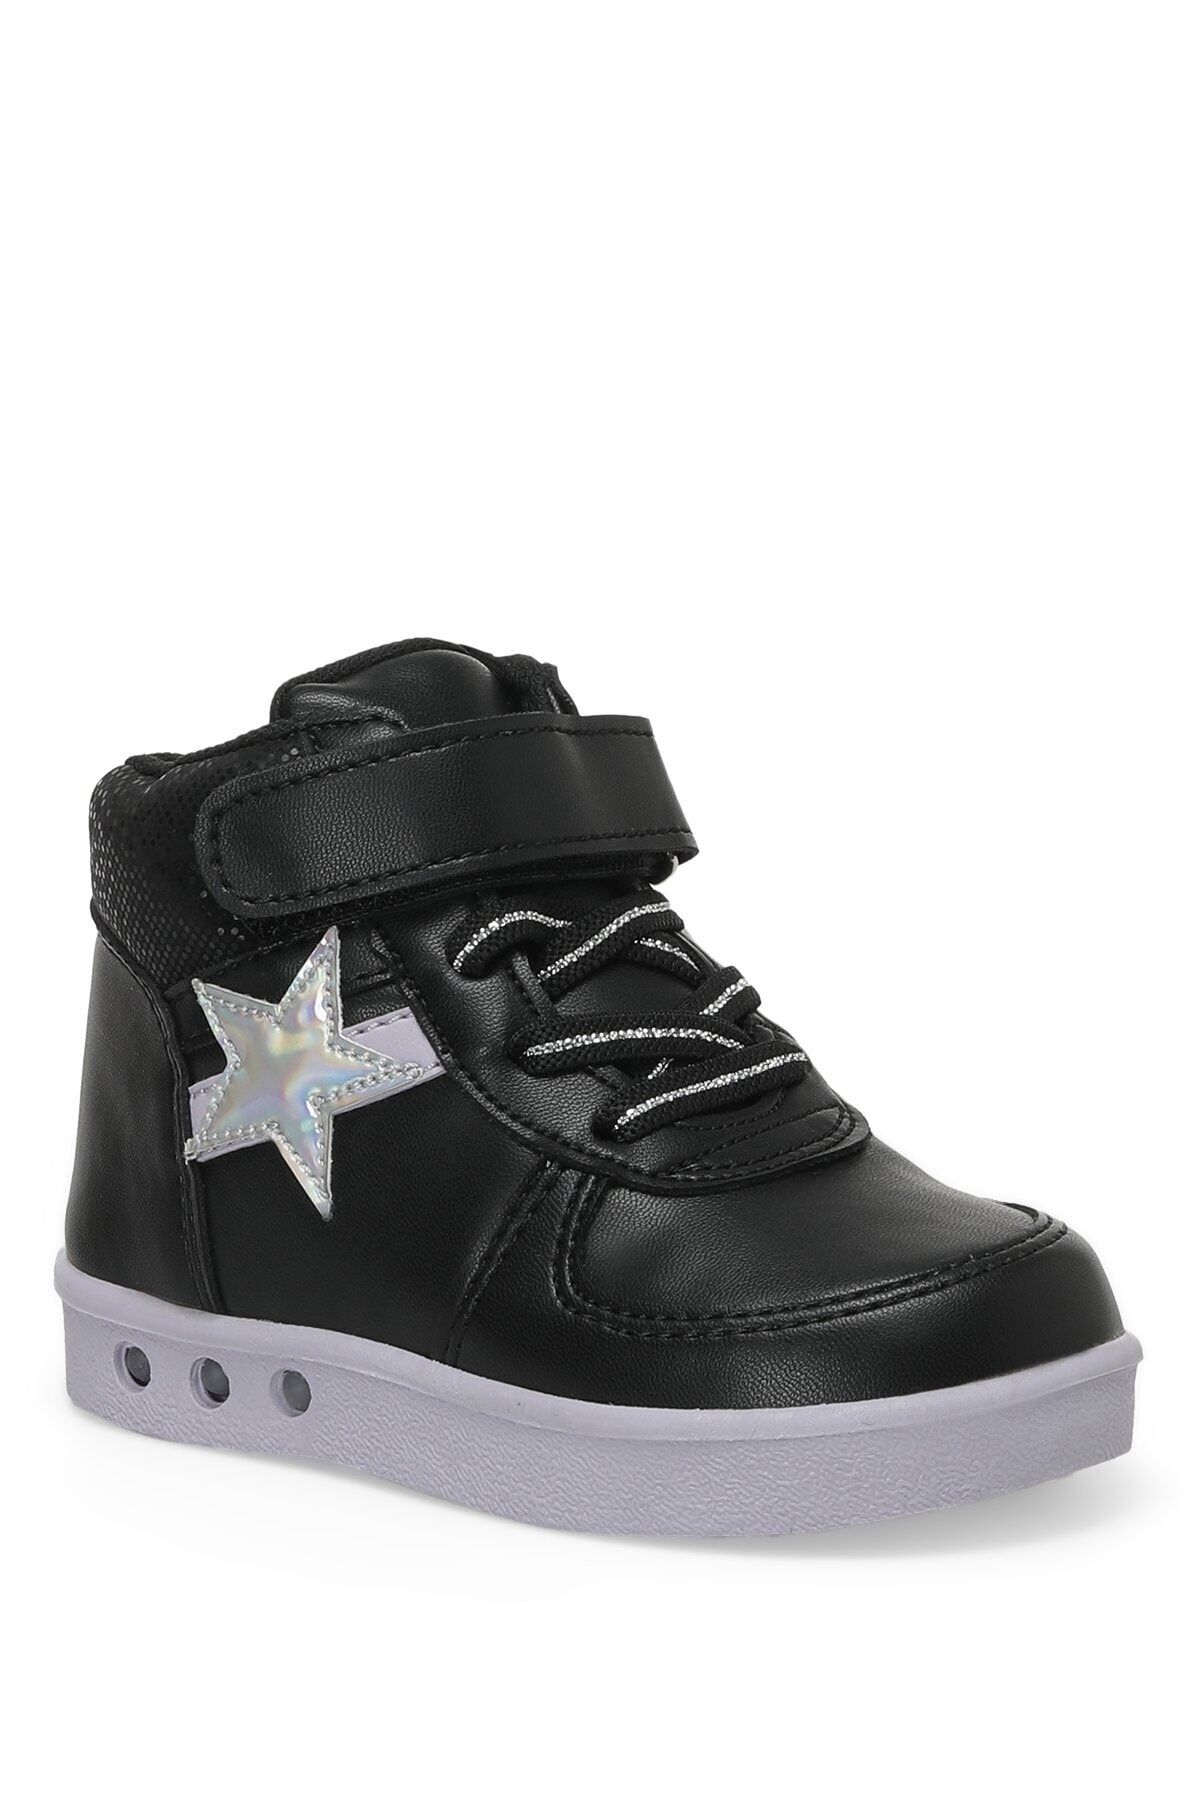 Polaris 622236.p2pr Siyah Kız Çocuk High Sneaker